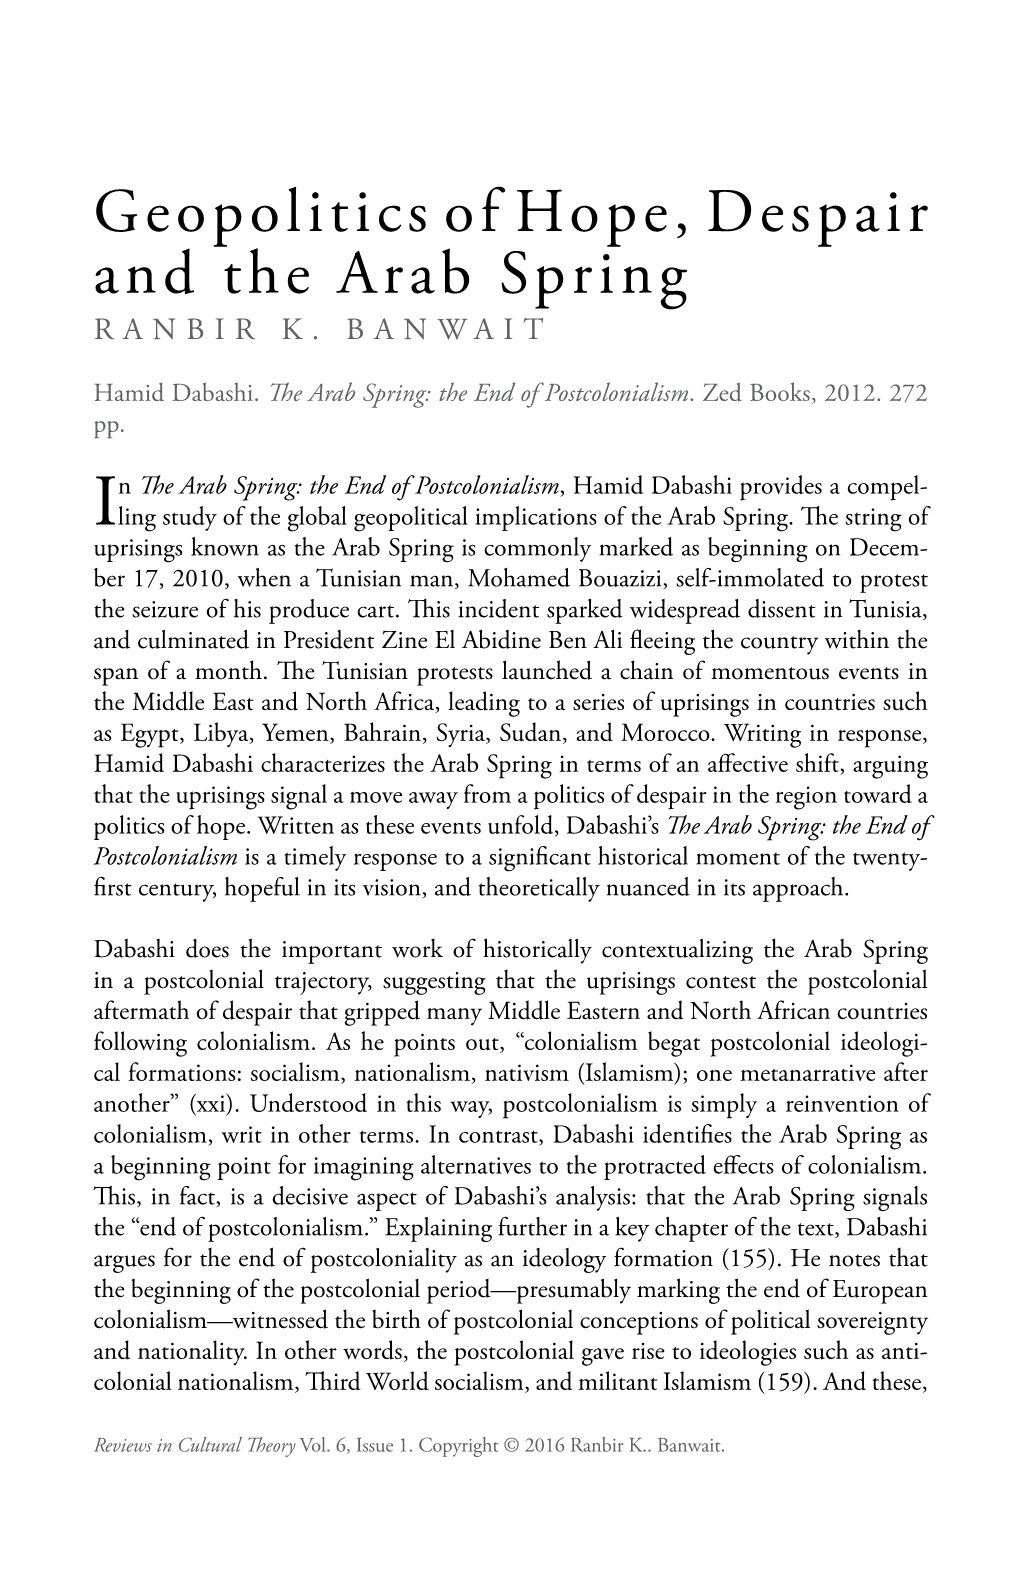 The Arab Spring RANBIR K